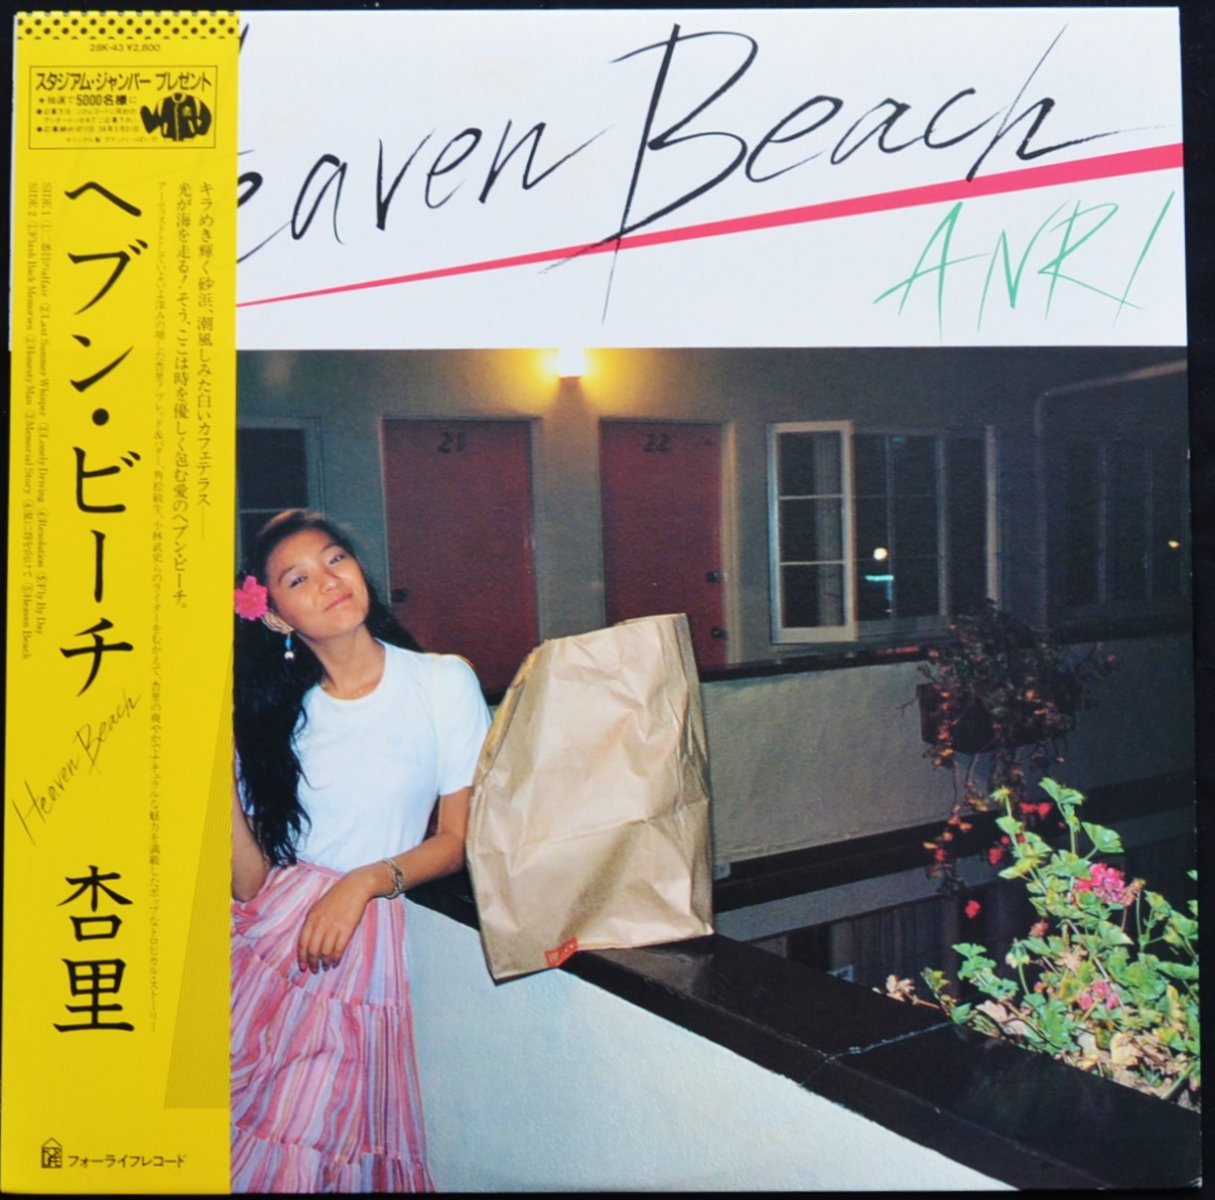 杏里 ANRI / ヘブン・ビーチ HEAVEN BEACH (LP) - HIP TANK RECORDS